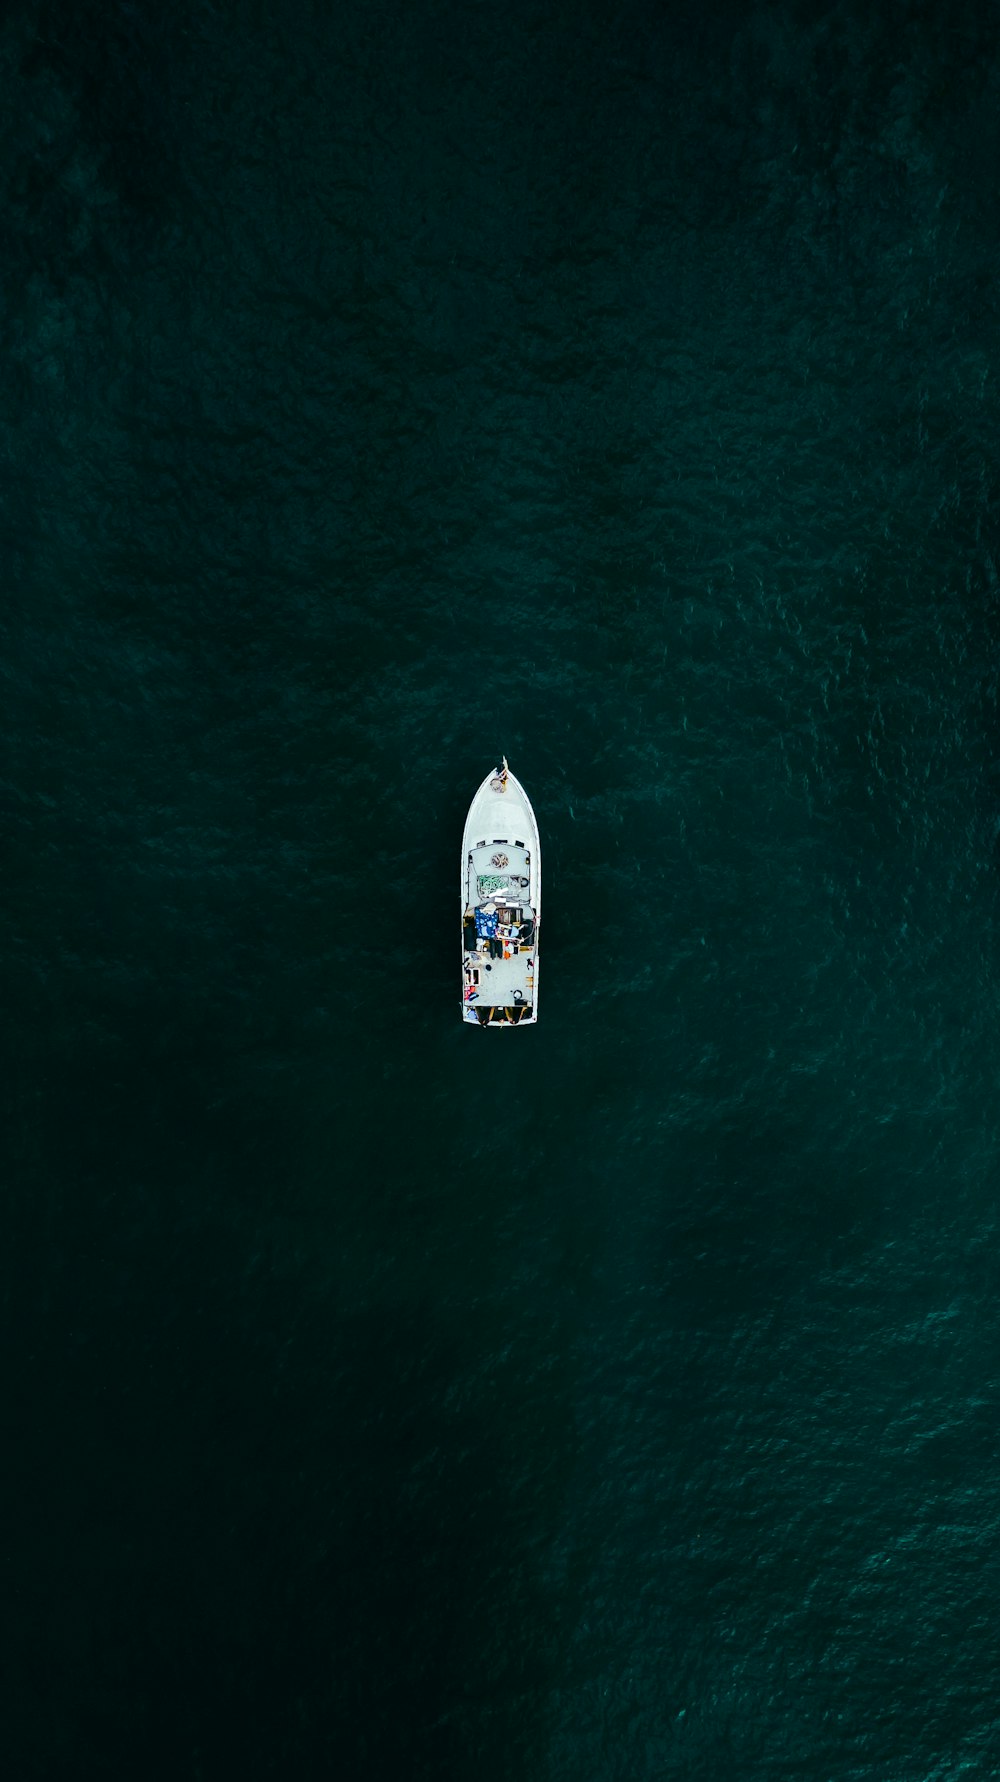 Un bote blanco flotando sobre un gran cuerpo de agua